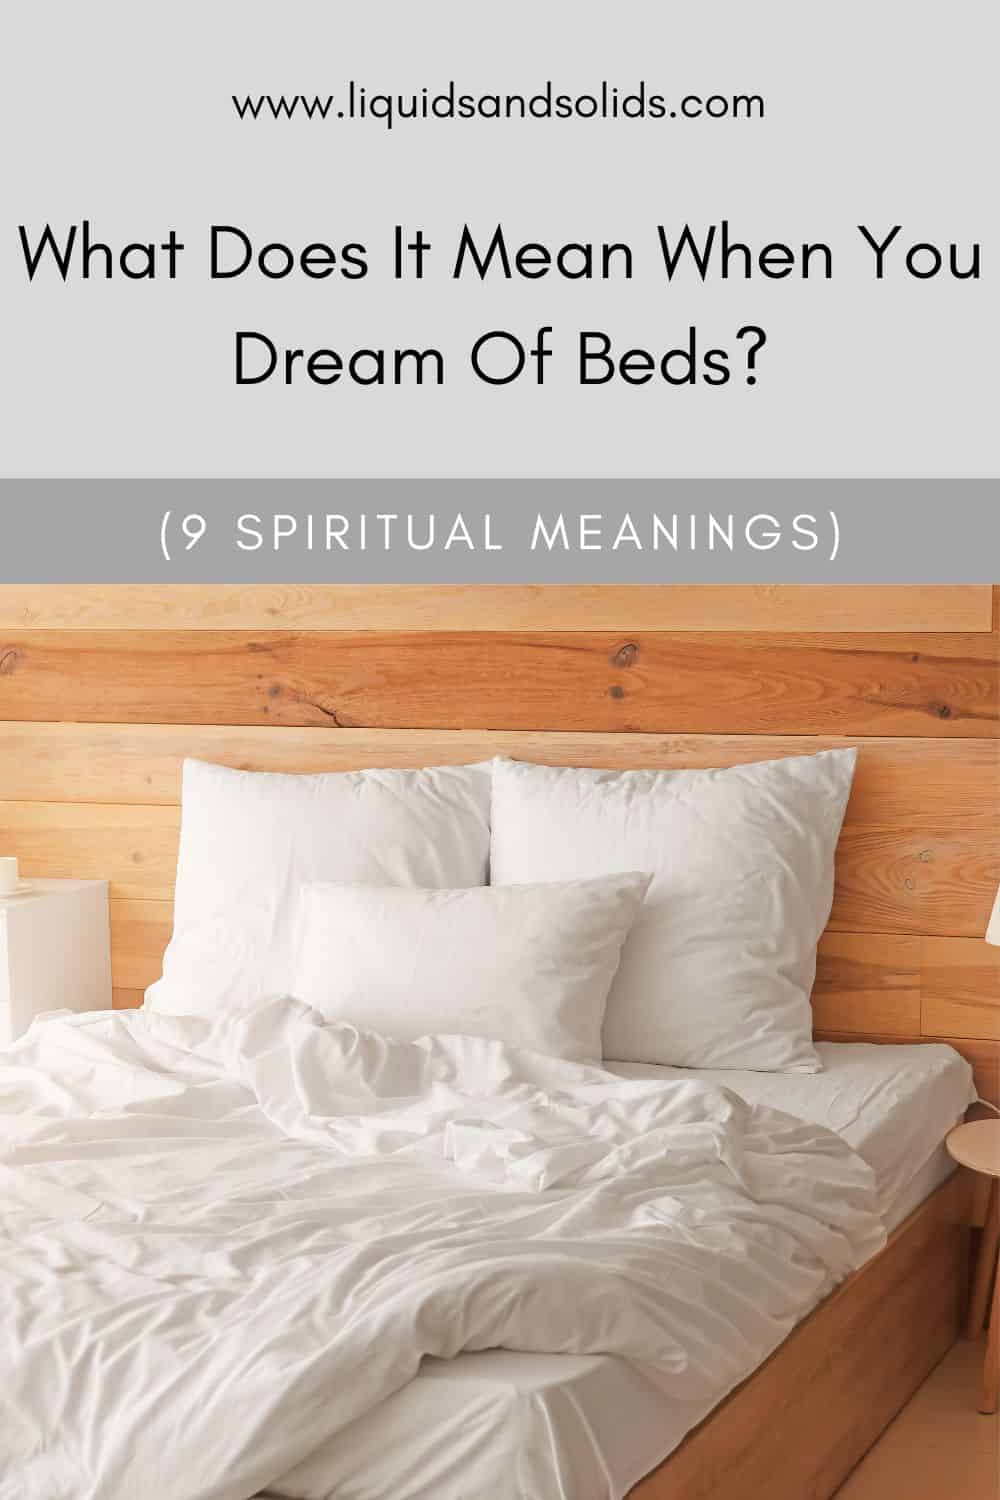  ماذا يعني أن تحلم بالسرير؟ (9 معاني روحية)